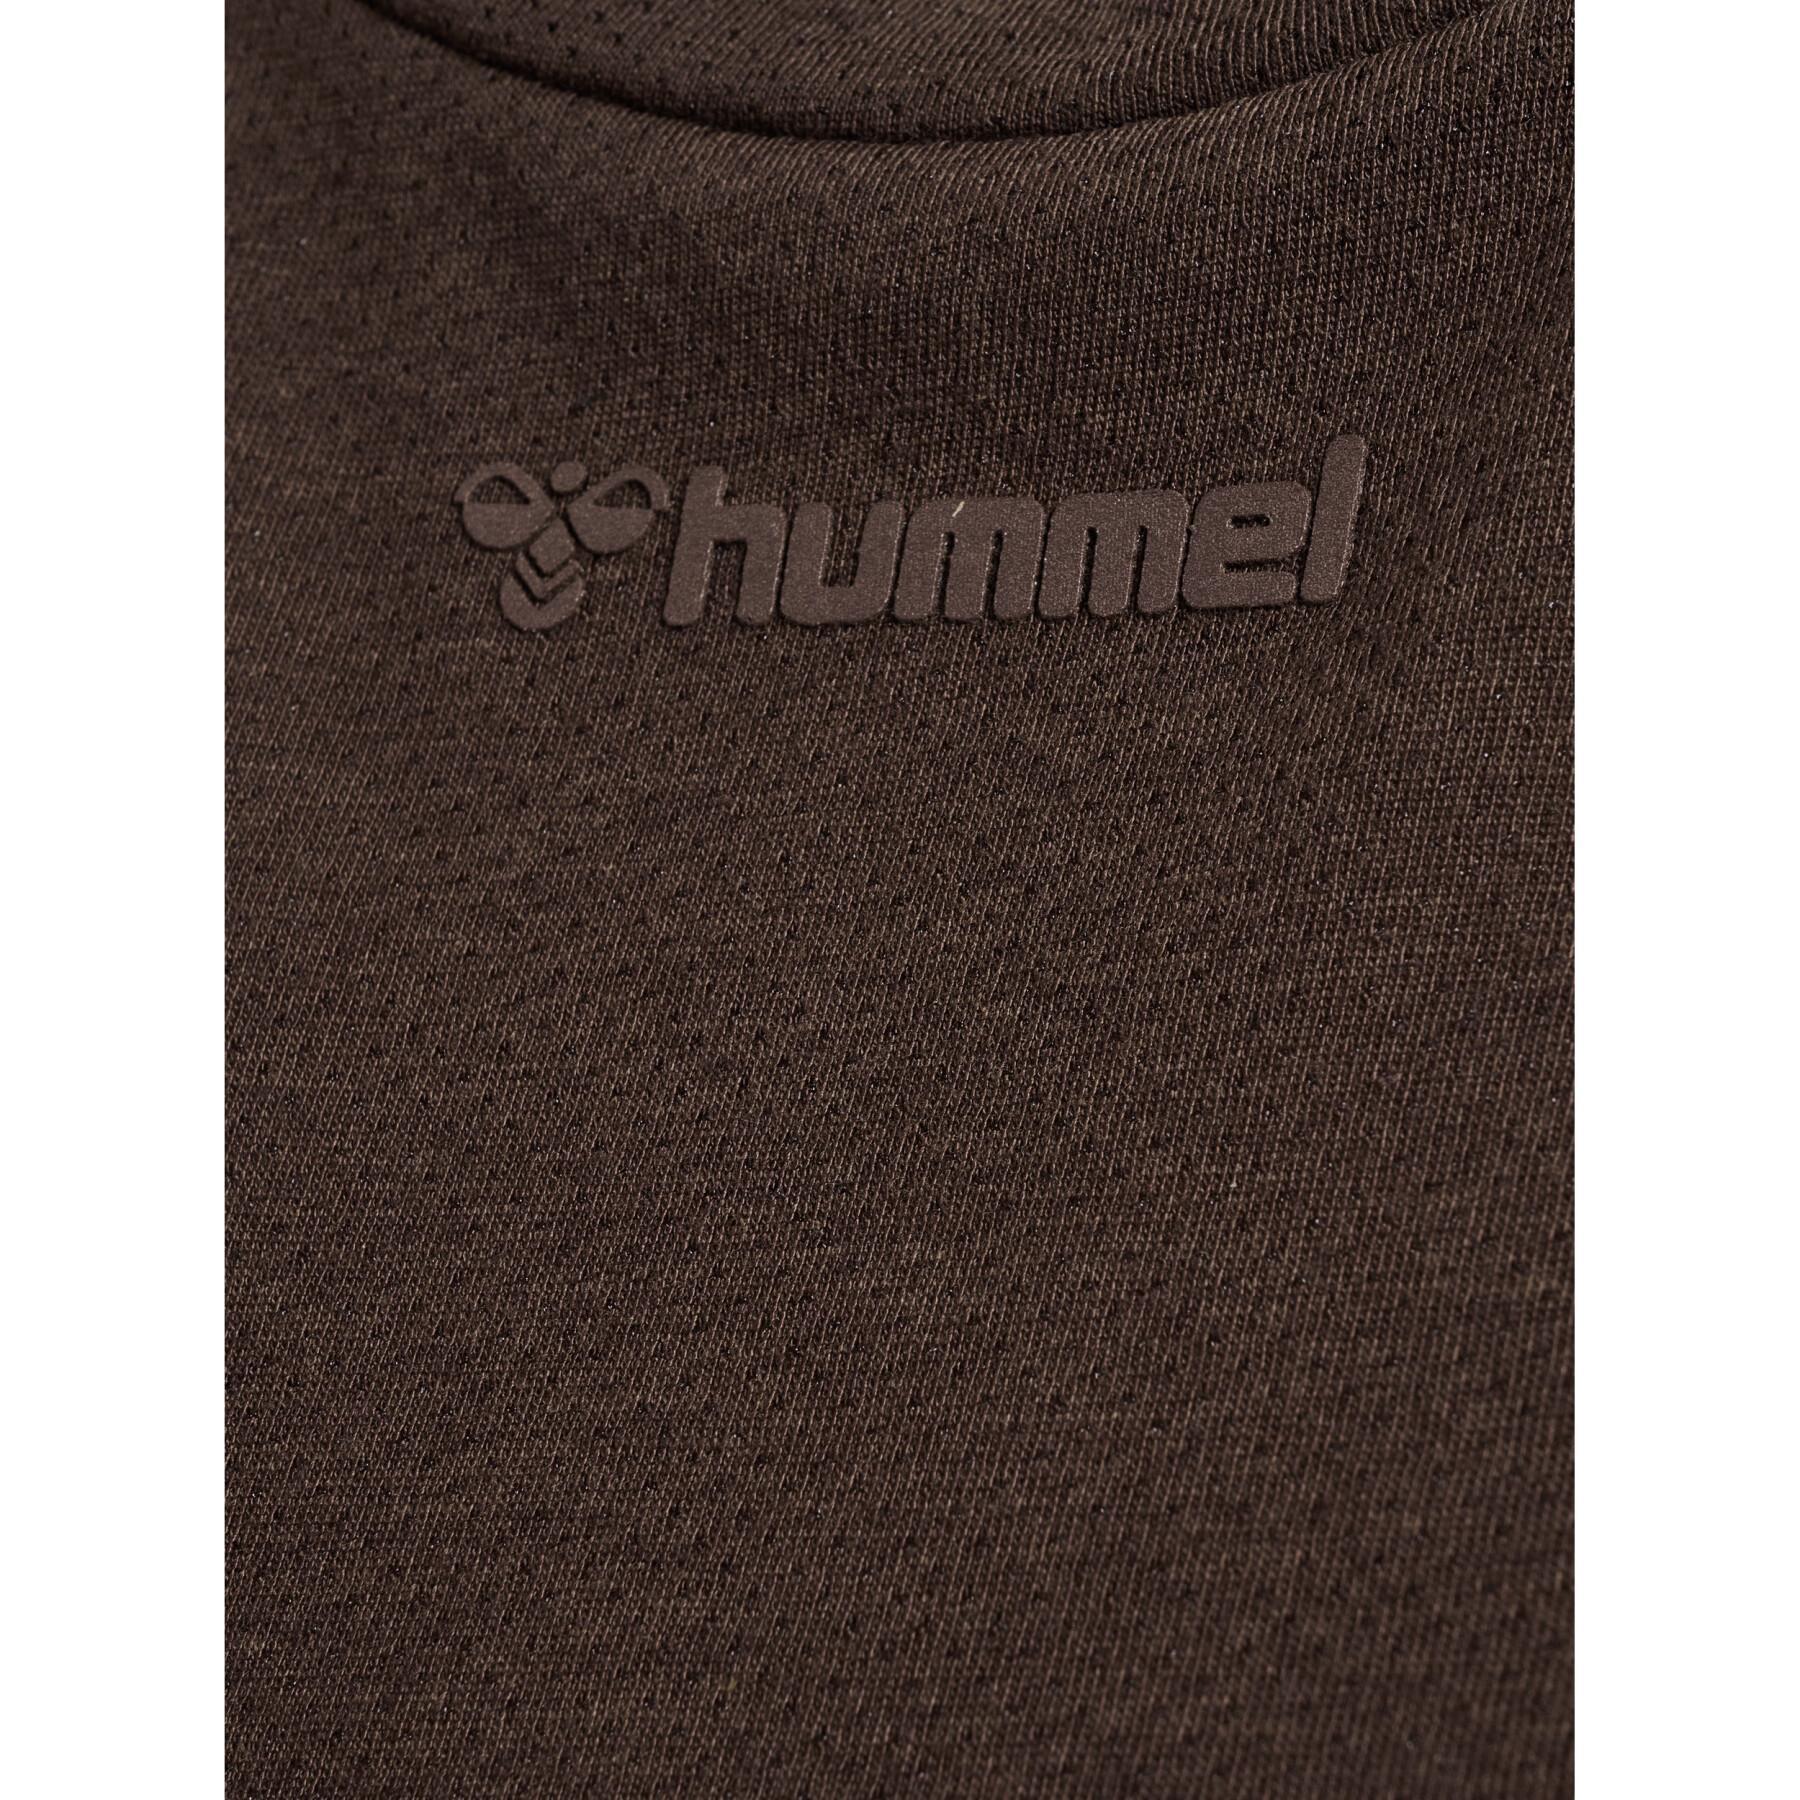 Camisola de manga comprida feminina Hummel Mt Vanja